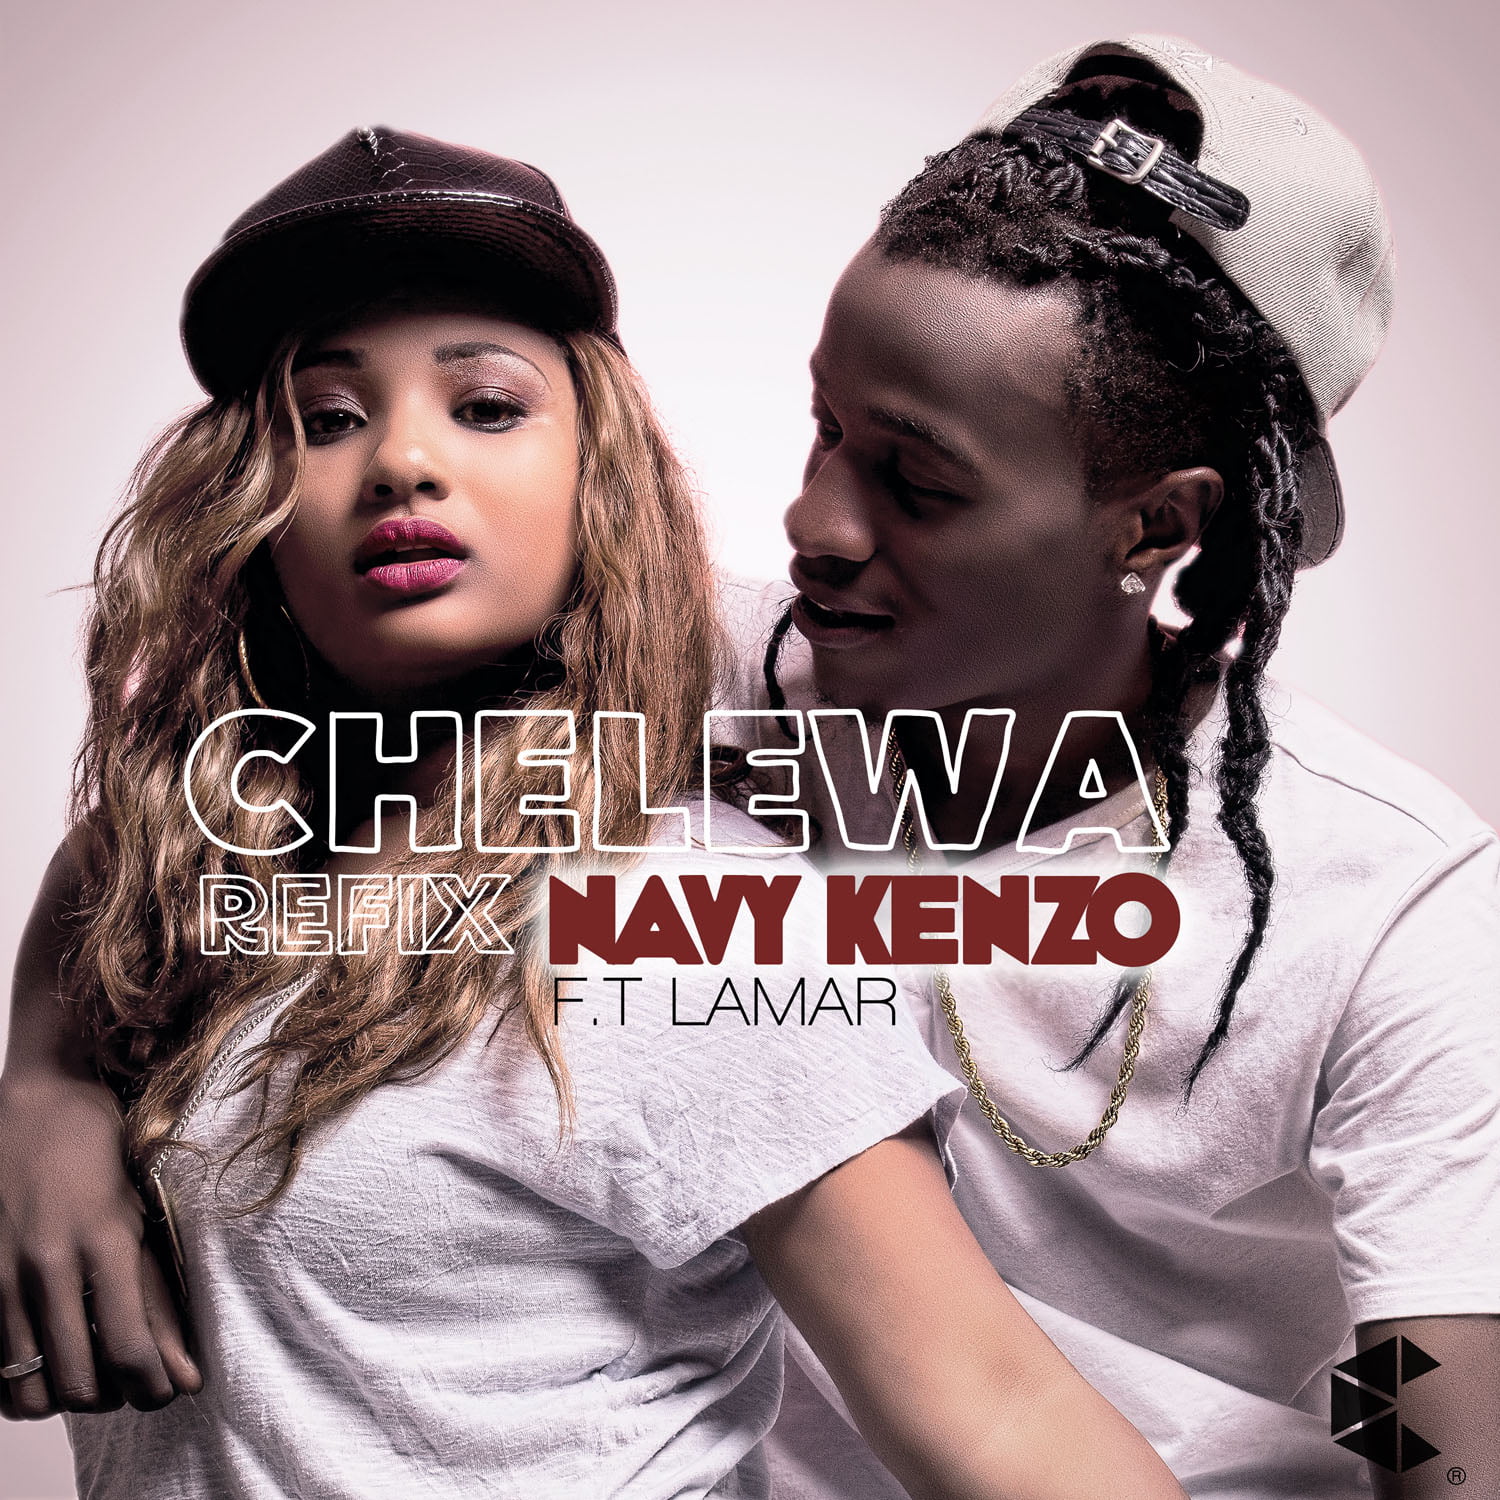 navy kenzo chelewa